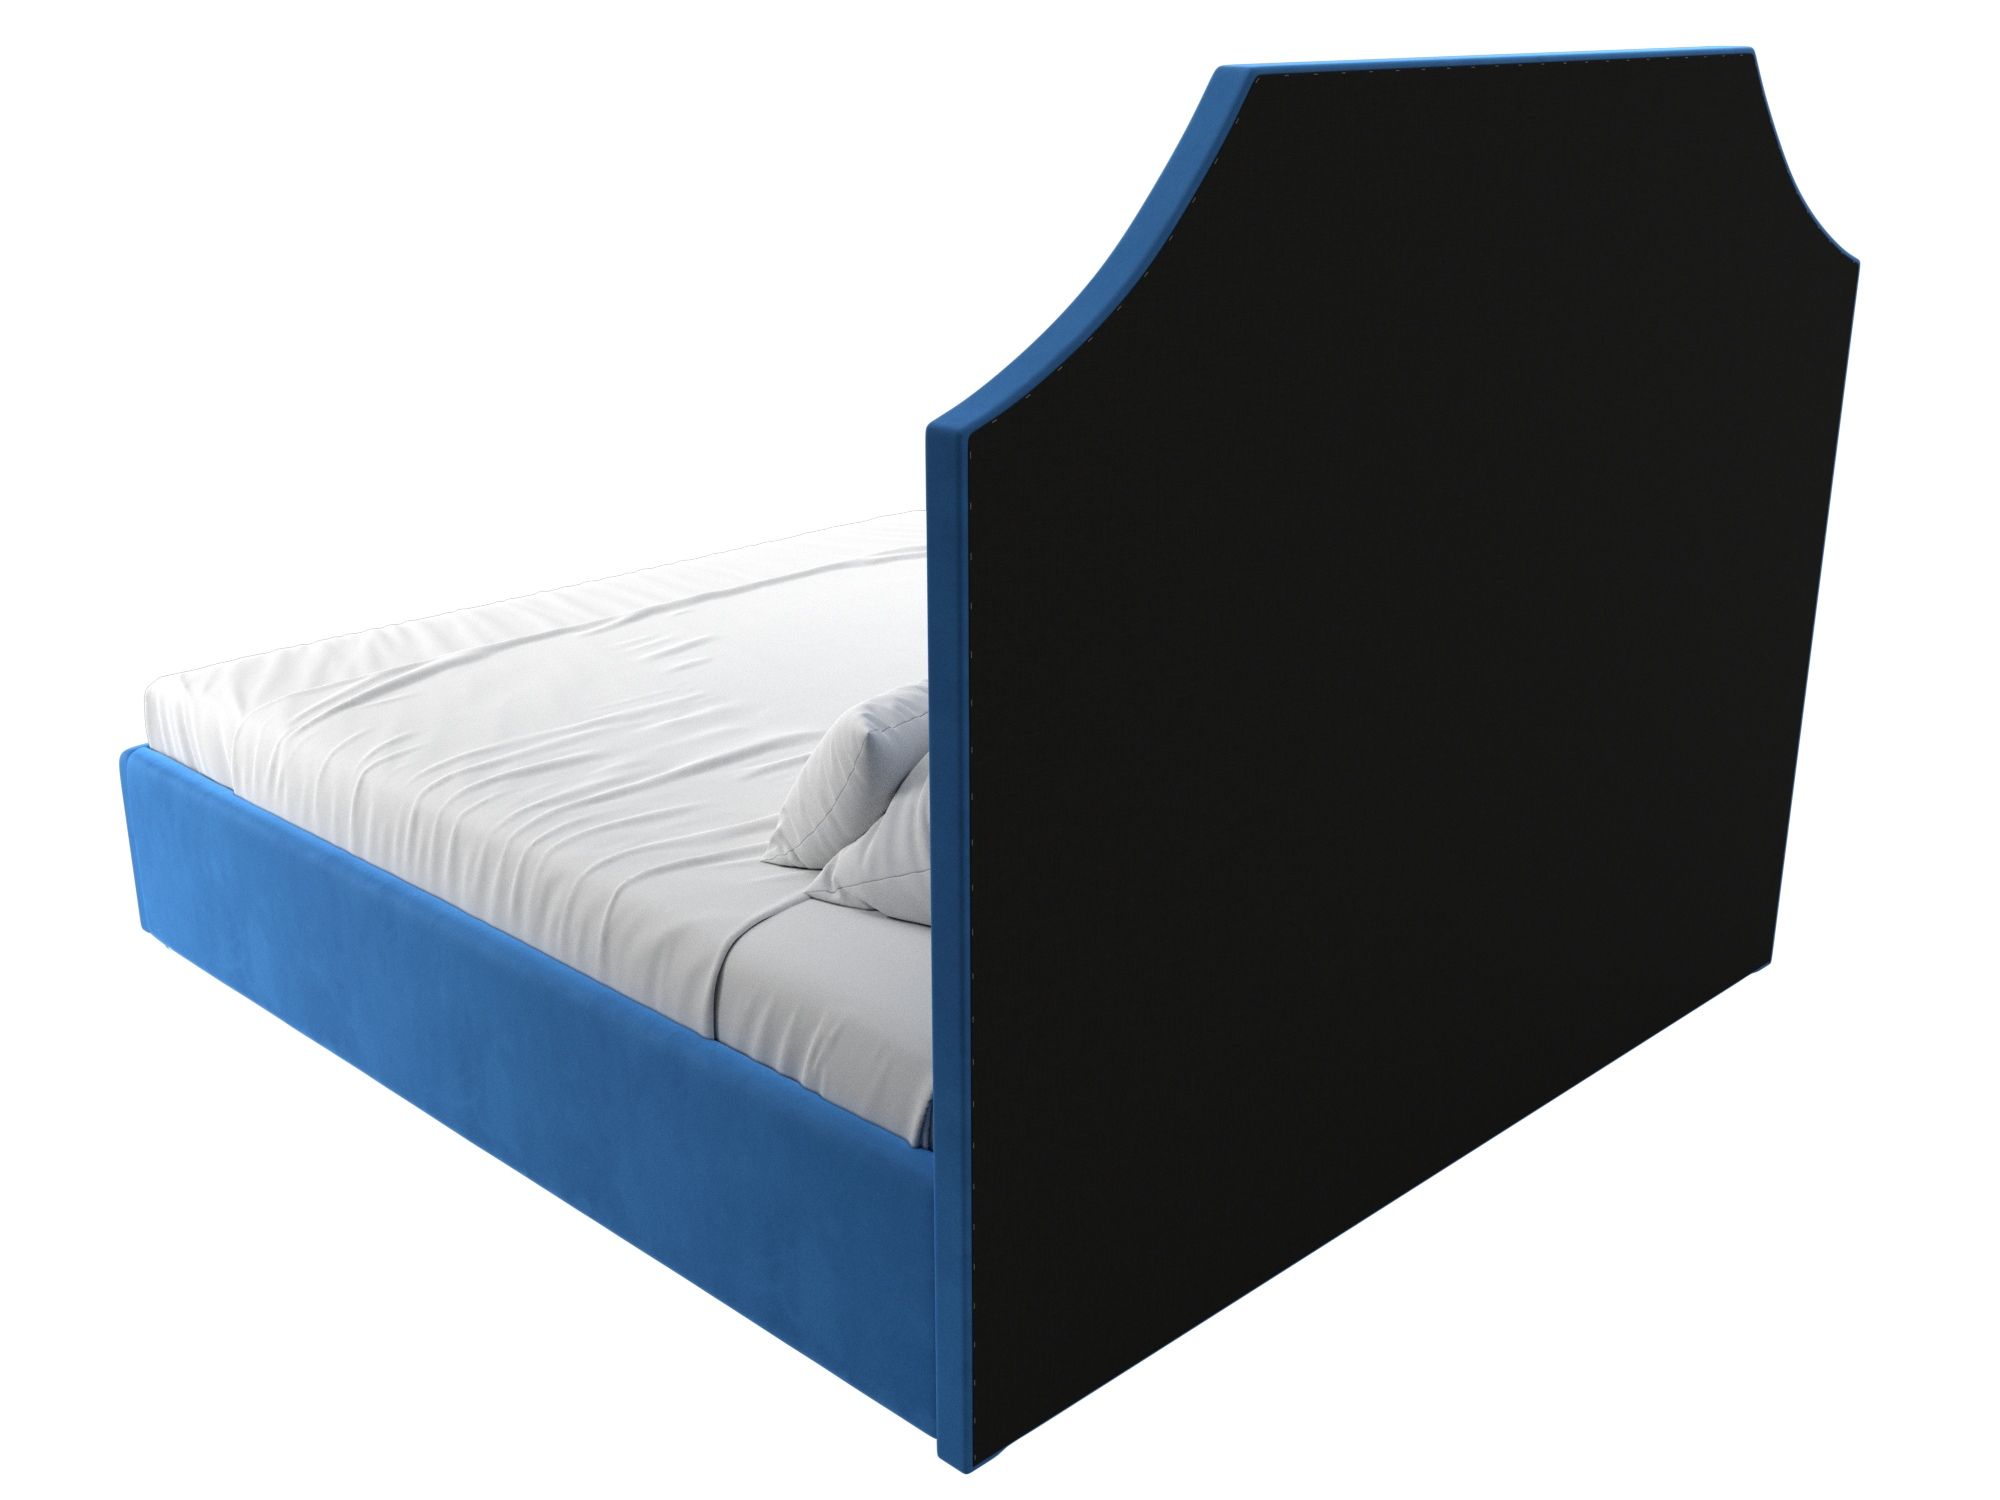 Интерьерная кровать Кантри 160 Голубой